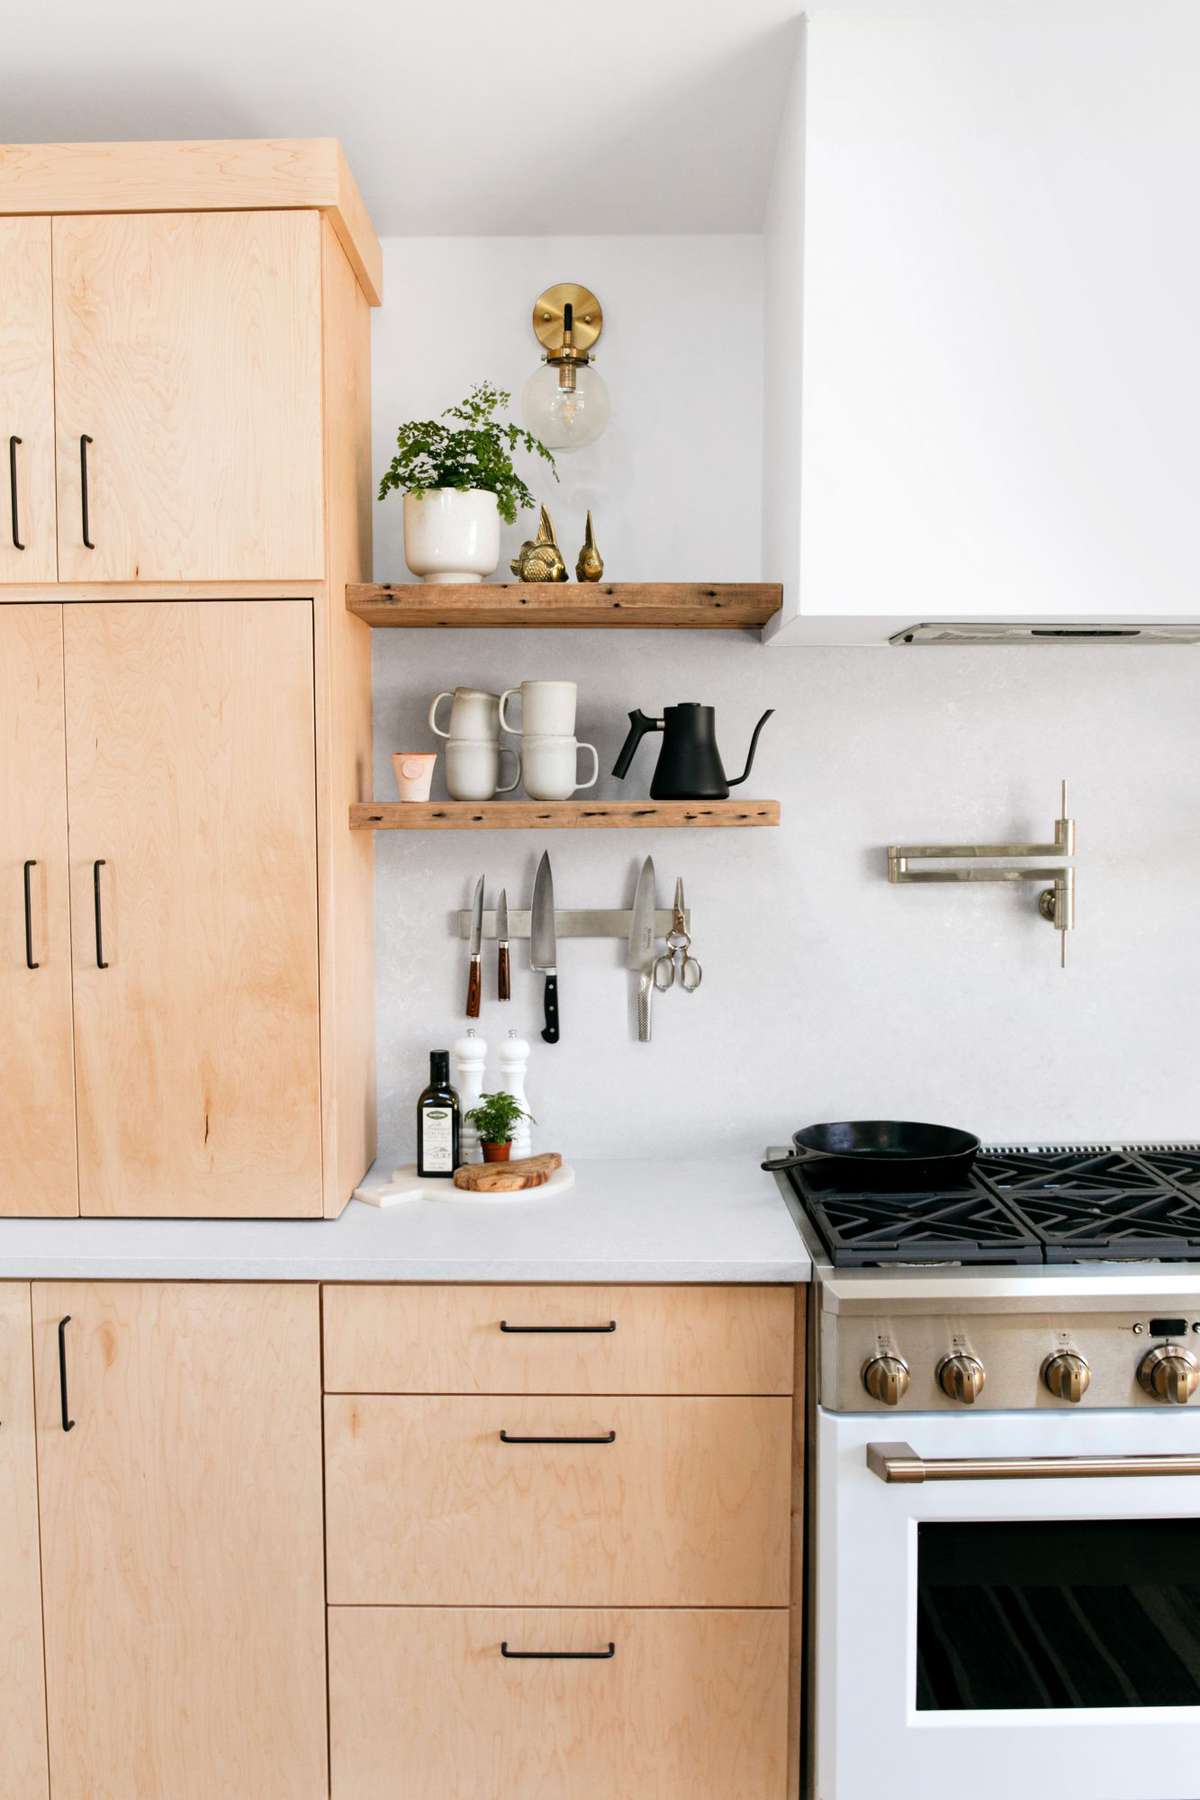 Designer Kim Wolfe's San Antonio, TX Home Kitchen with Minimalist Design